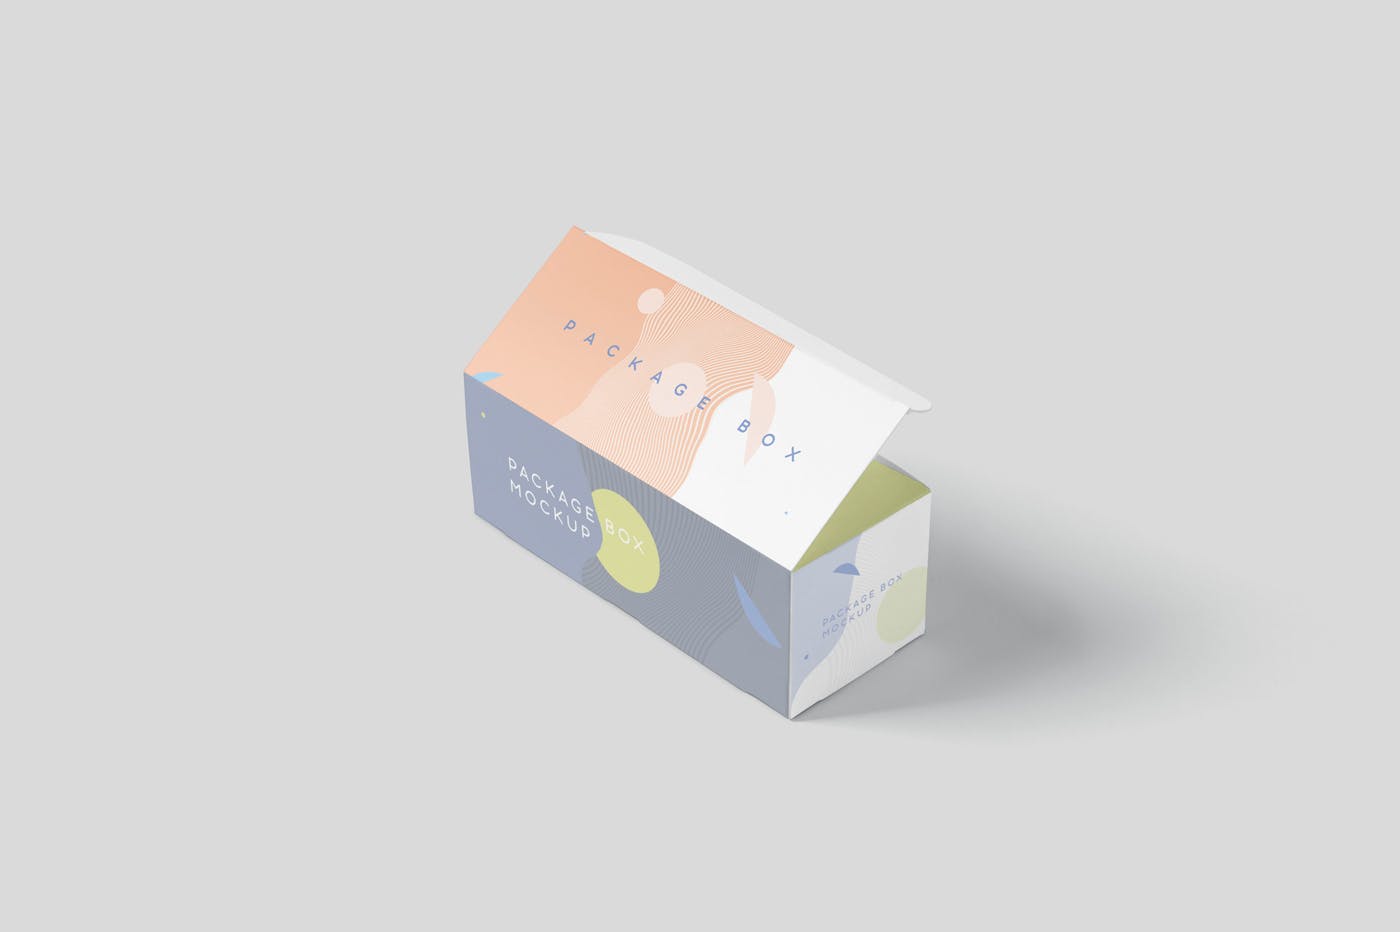 宽矩形包装盒外观设计效果图普贤居精选 Package Box Mock-Up Set – Wide Rectangle插图(5)